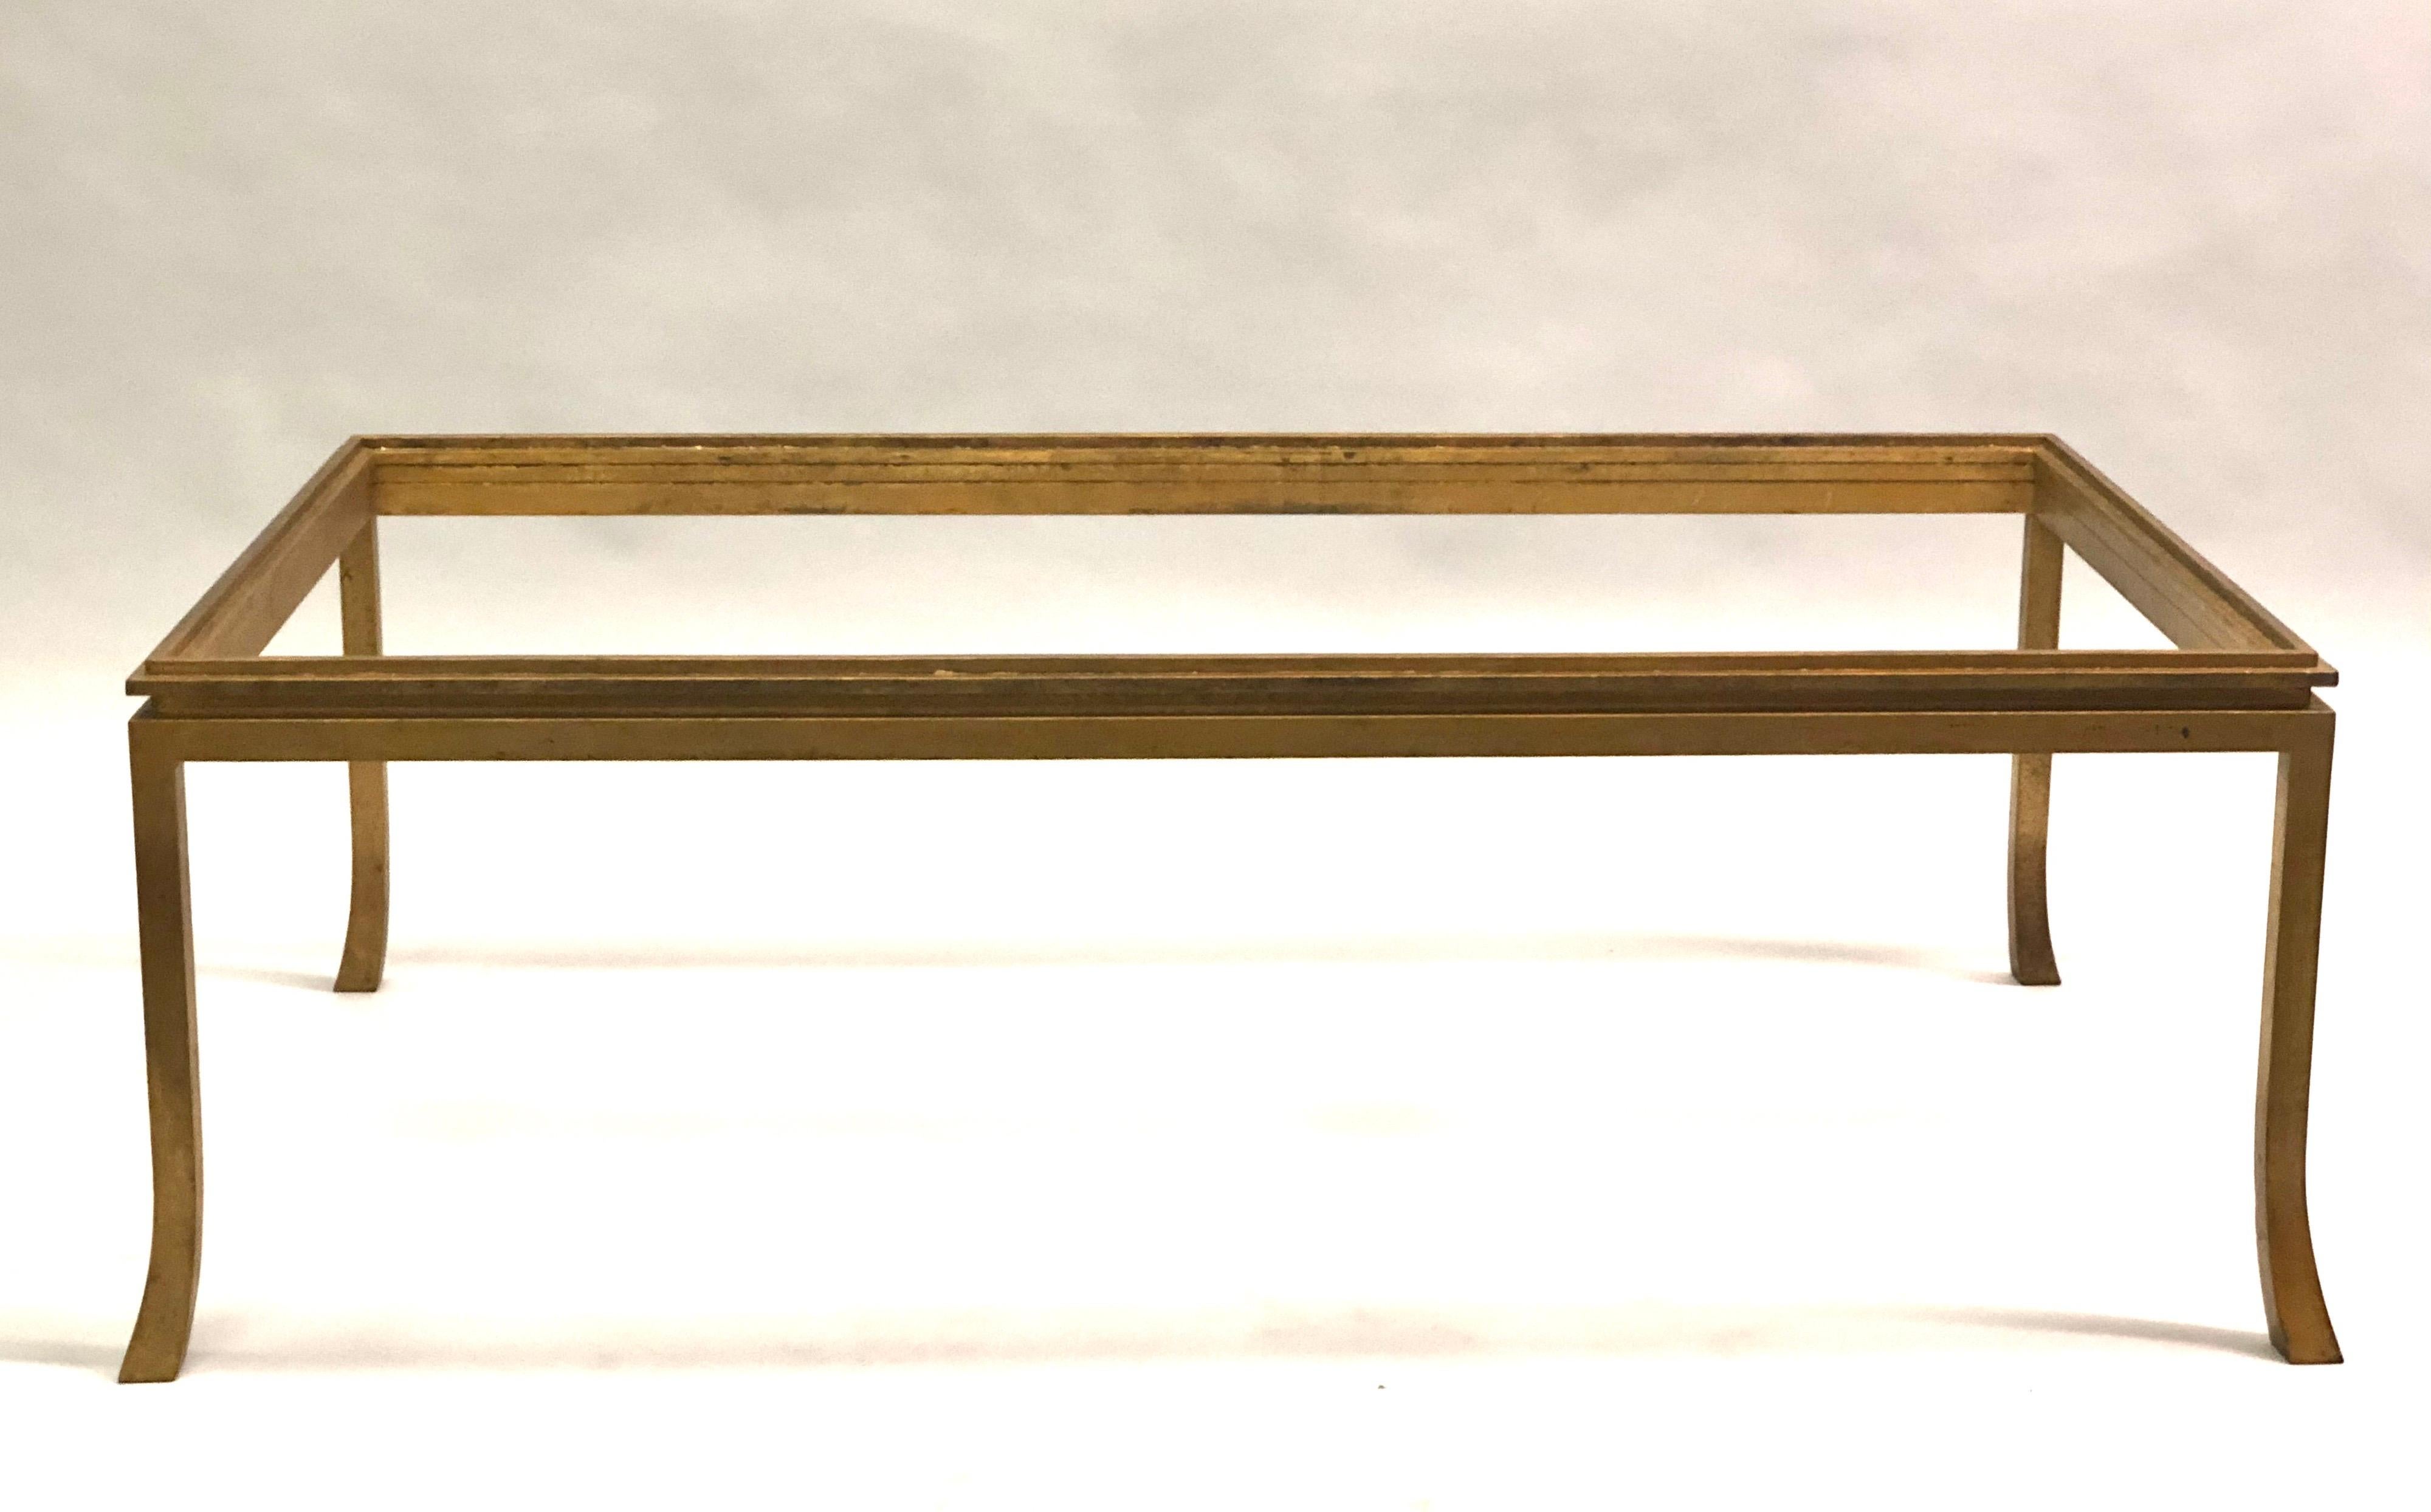 Französischer neoklassischer Couchtisch aus vergoldetem Eisen von Maison Ramsay aus der Jahrhundertmitte, 1970. Ein sinnlicher Couchtisch im klassischen Ramsay-Stil mit niedrigem Profil und ausgestellten Beinen.

Eine Glas- oder Steinplatte ist